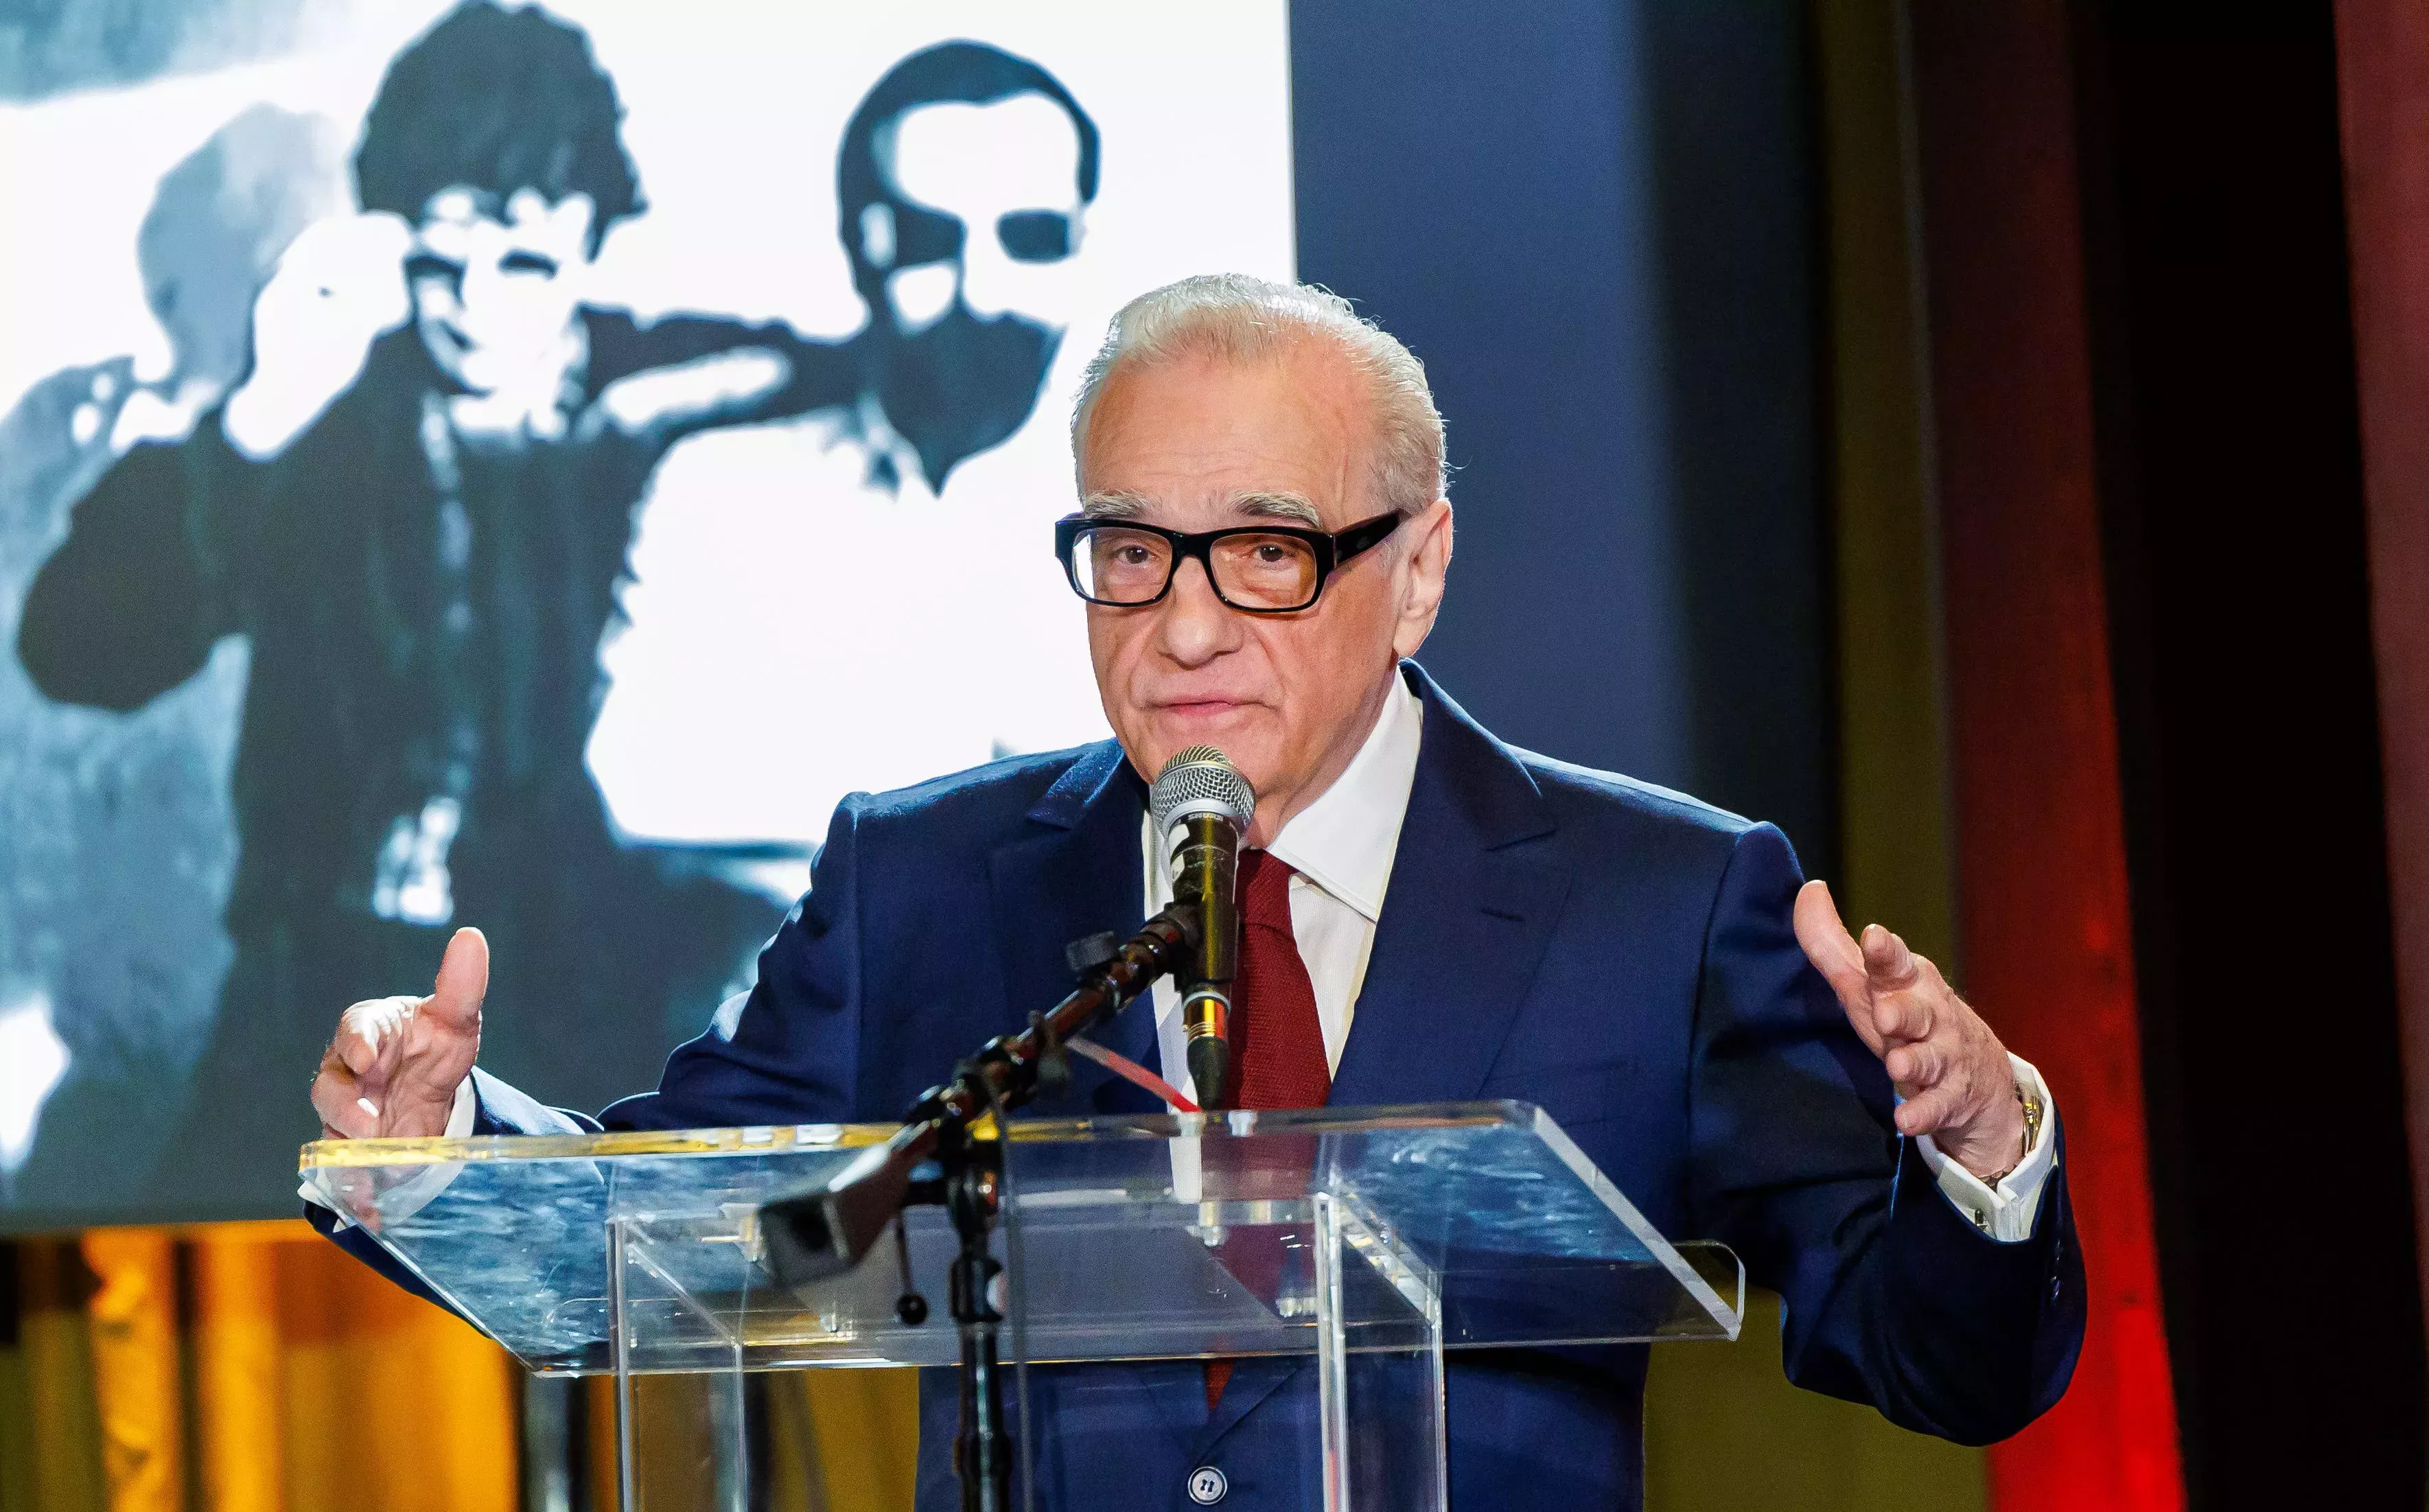 

	
		Martin Scorsese organiza un concierto homenaje a Robbie Robertson, en el que Jackson Browne y otros músicos le rinden tributo
	
	